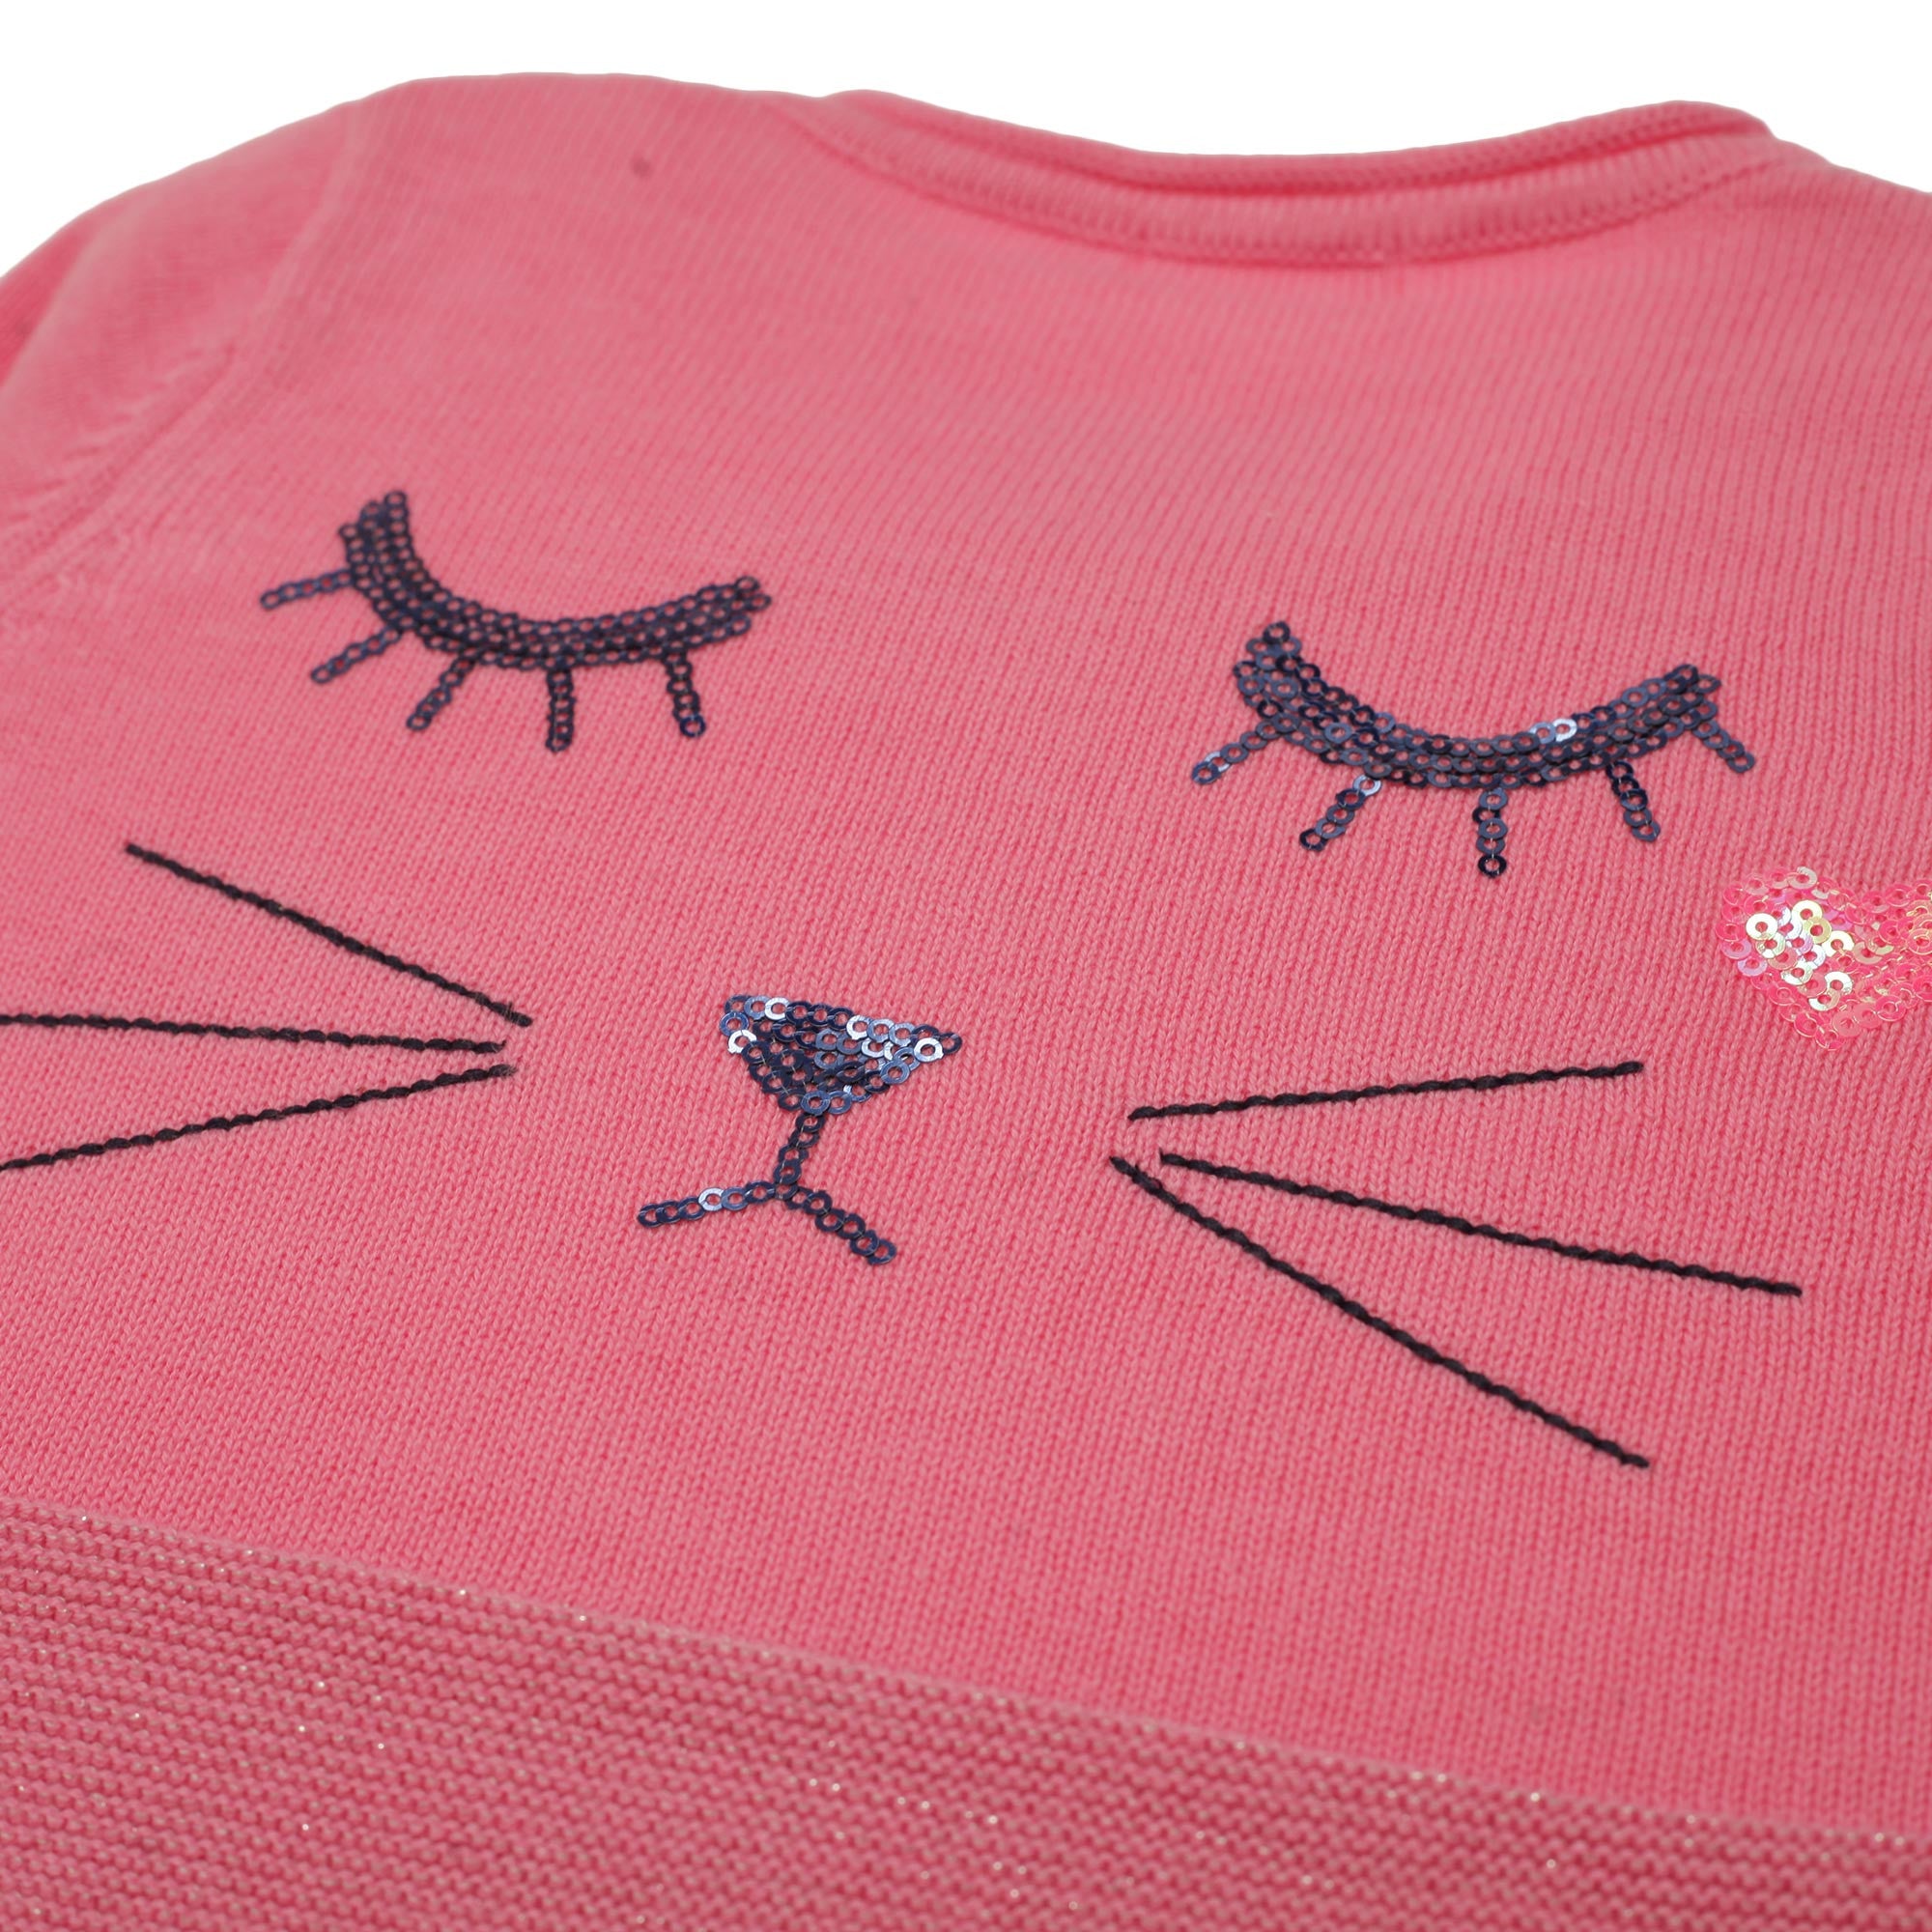 Baby Girls Dark Pink Cotton Cardigan - CÉMAROSE | Children's Fashion Store - 3